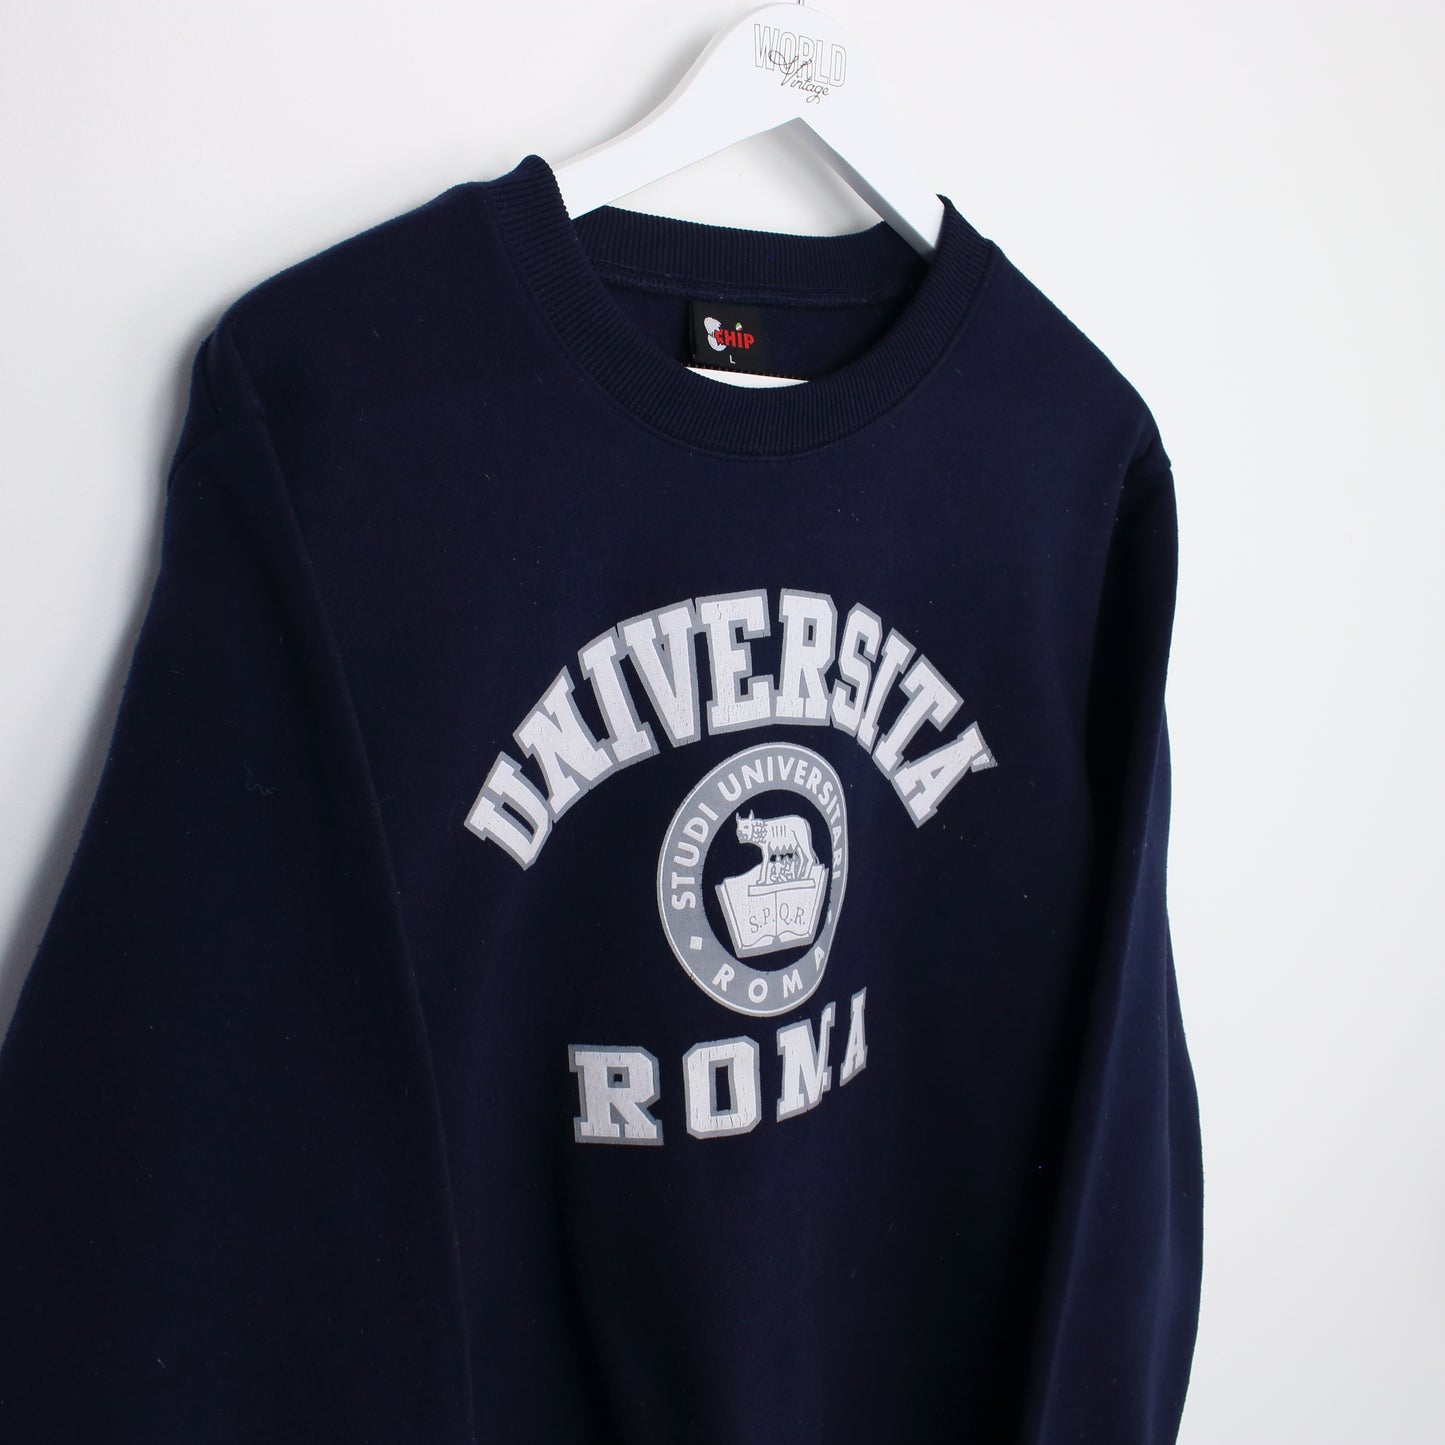 Vintage Chip Universita Roma sweatshirt in navy. Best fits L